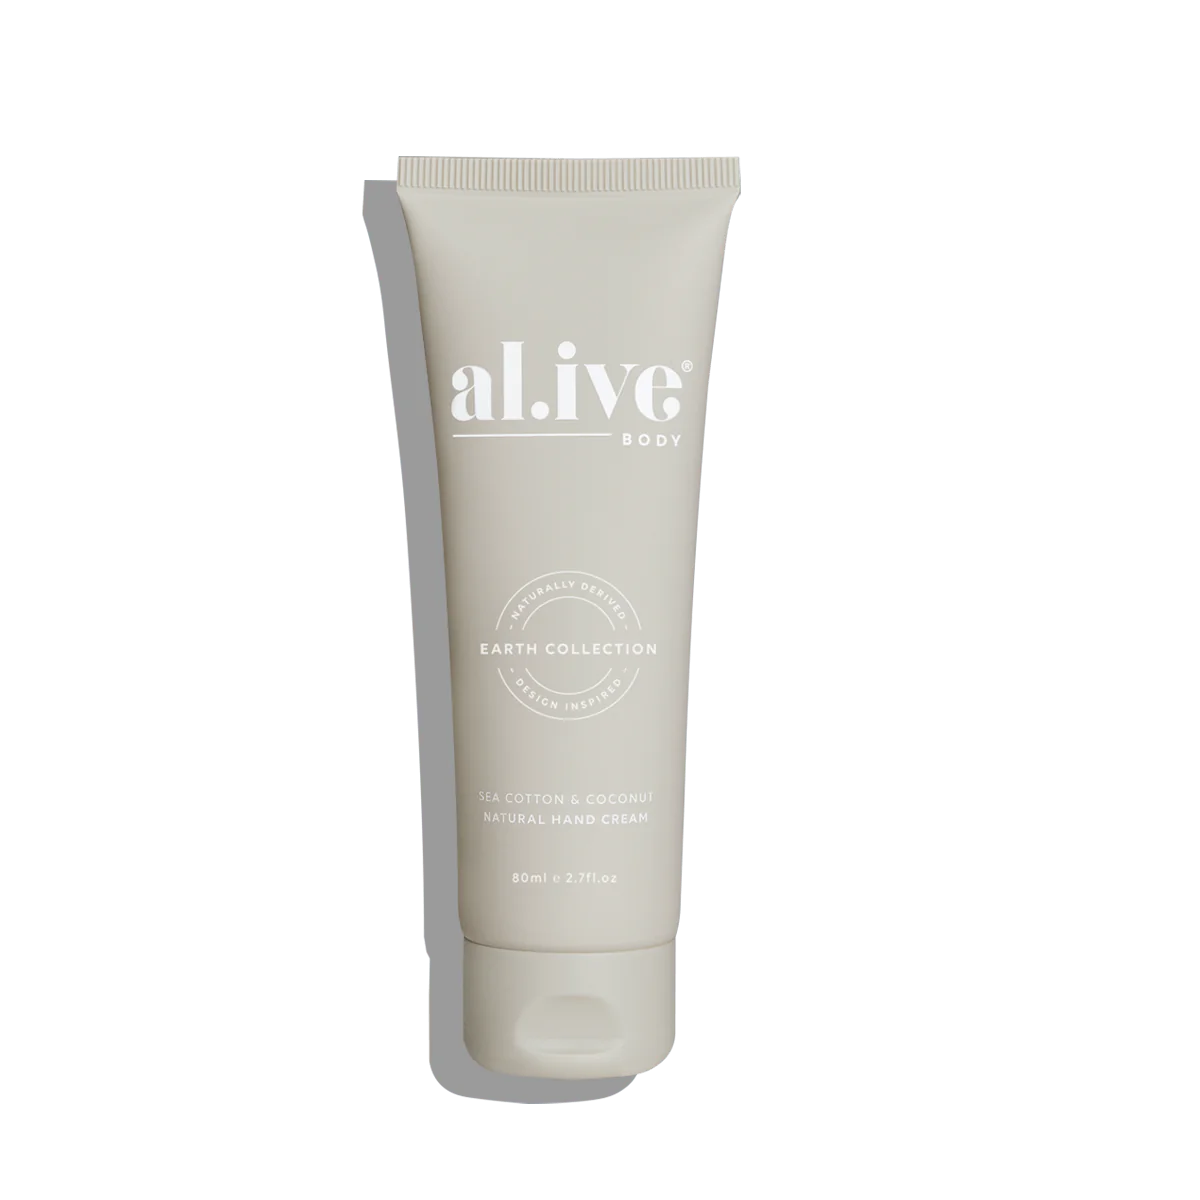 Al.ive Body | Hand Cream - Sea Cotton & Coconut